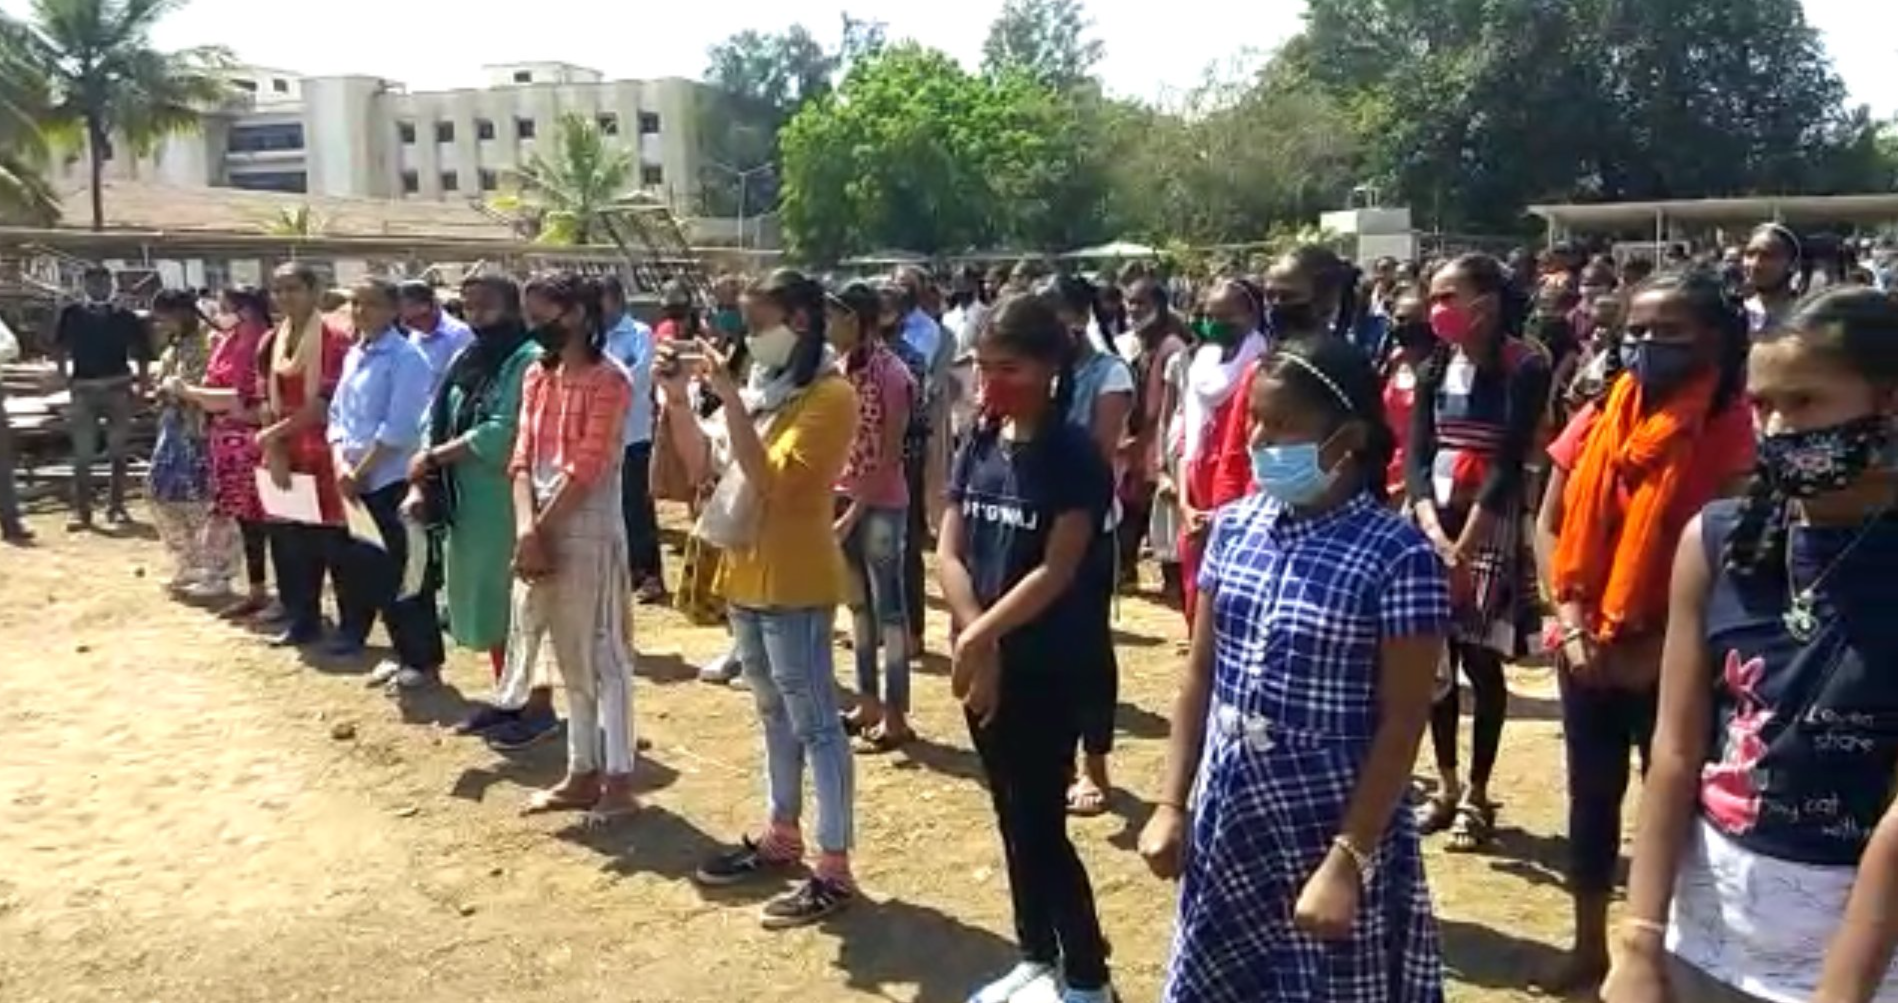 ધરમપુરમાં વિદ્યાર્થિનીઓને સેલ્ફ ડિફેન્સની તાલીમ અપાઈ